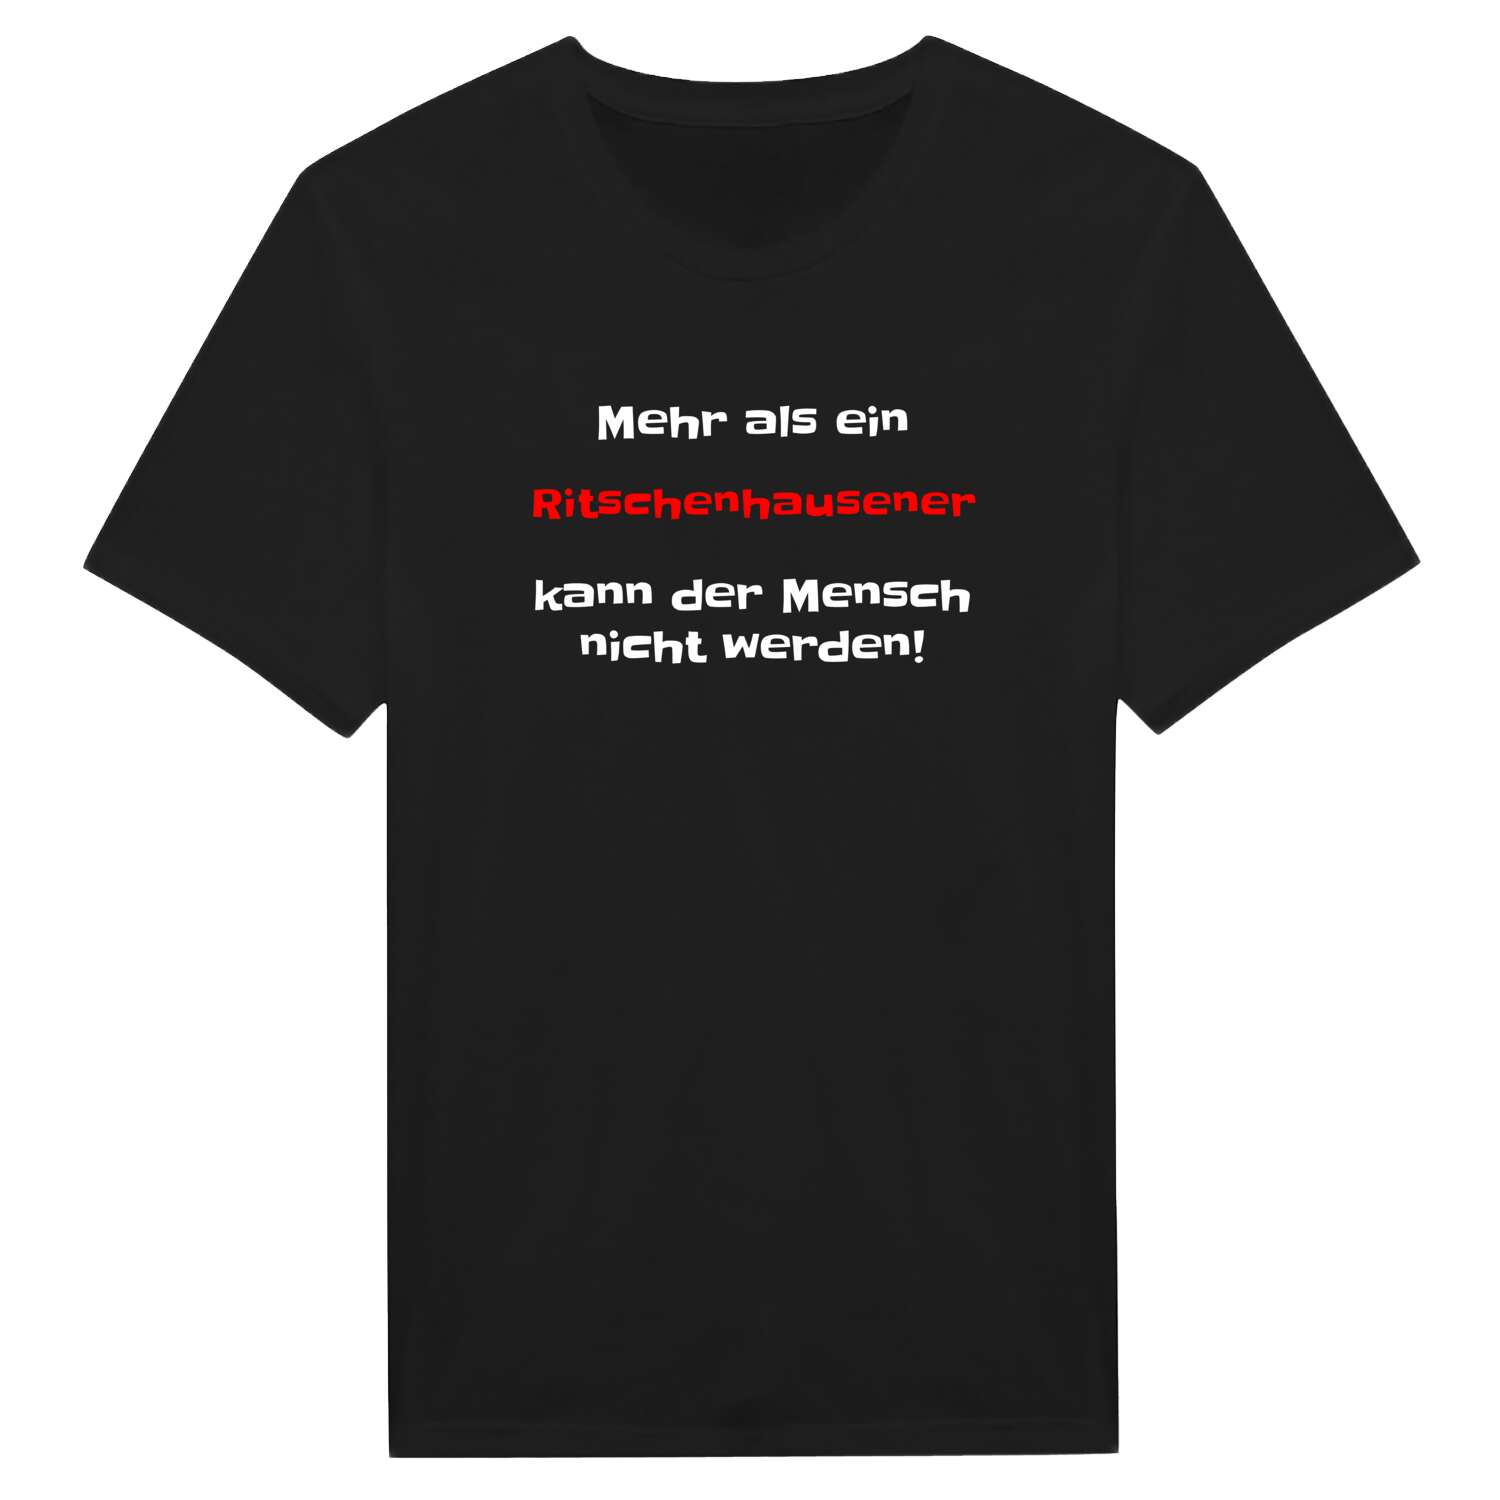 Ritschenhausen T-Shirt »Mehr als ein«